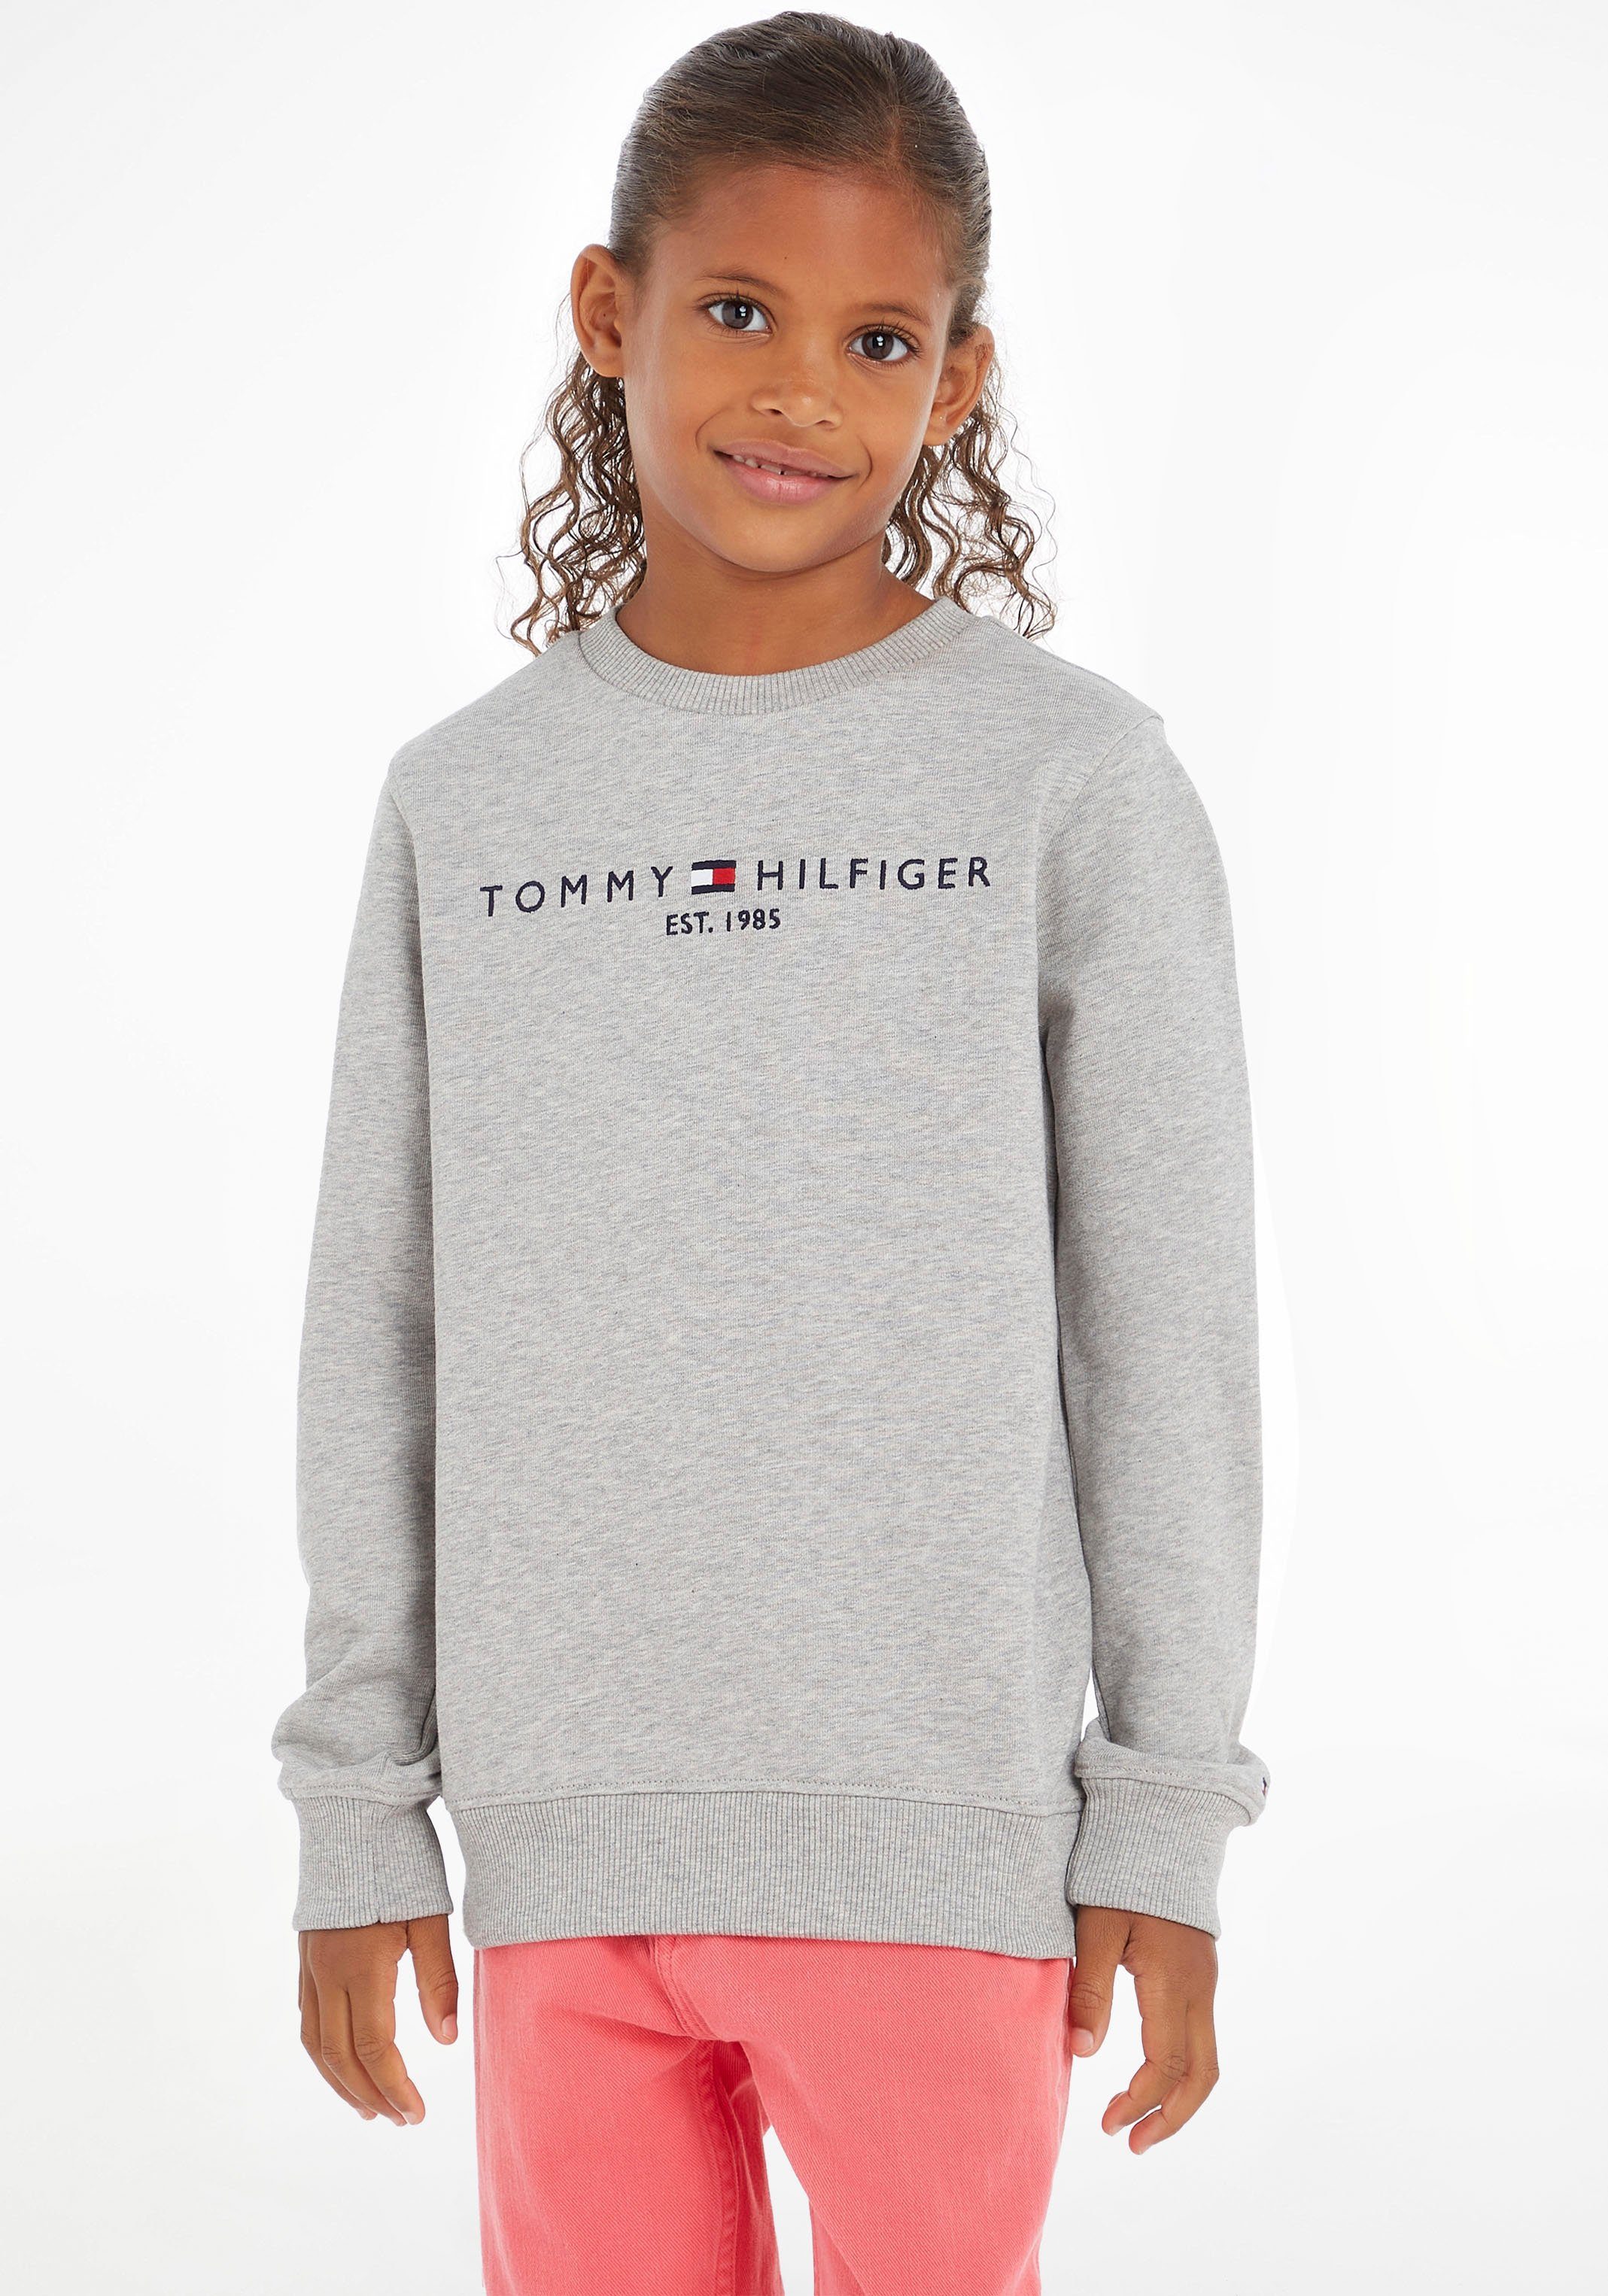 Tommy Hilfiger Sweatshirt ESSENTIAL SWEATSHIRT Kinder Kids Junior  MiniMe,für Jungen und Mädchen, Mit großem Logoschriftzug auf der Brust